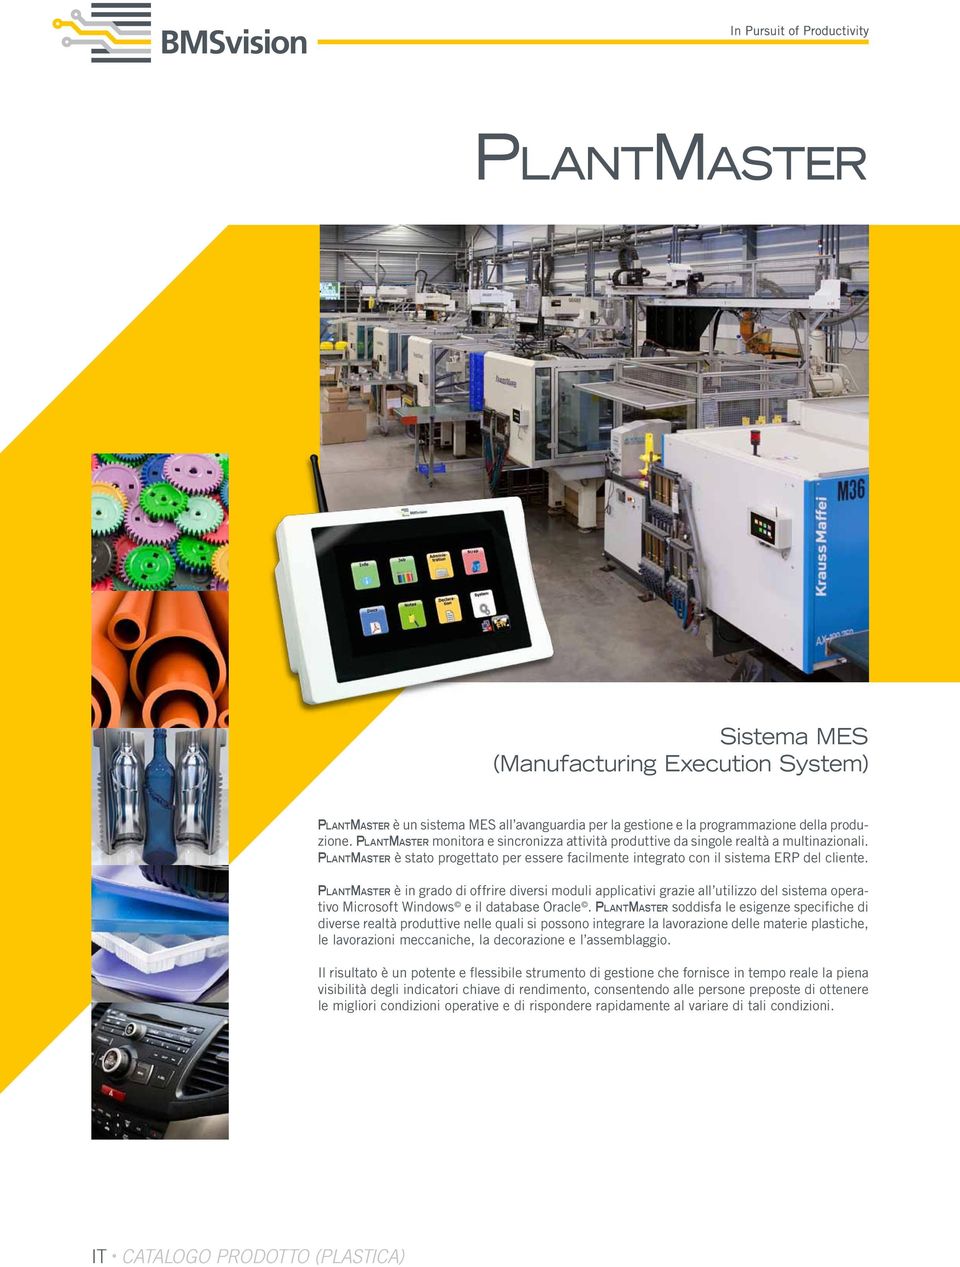 PlantMaster è in grado di offrire diversi moduli applicativi grazie all utilizzo del sistema operativo Microsoft Windows e il database Oracle.